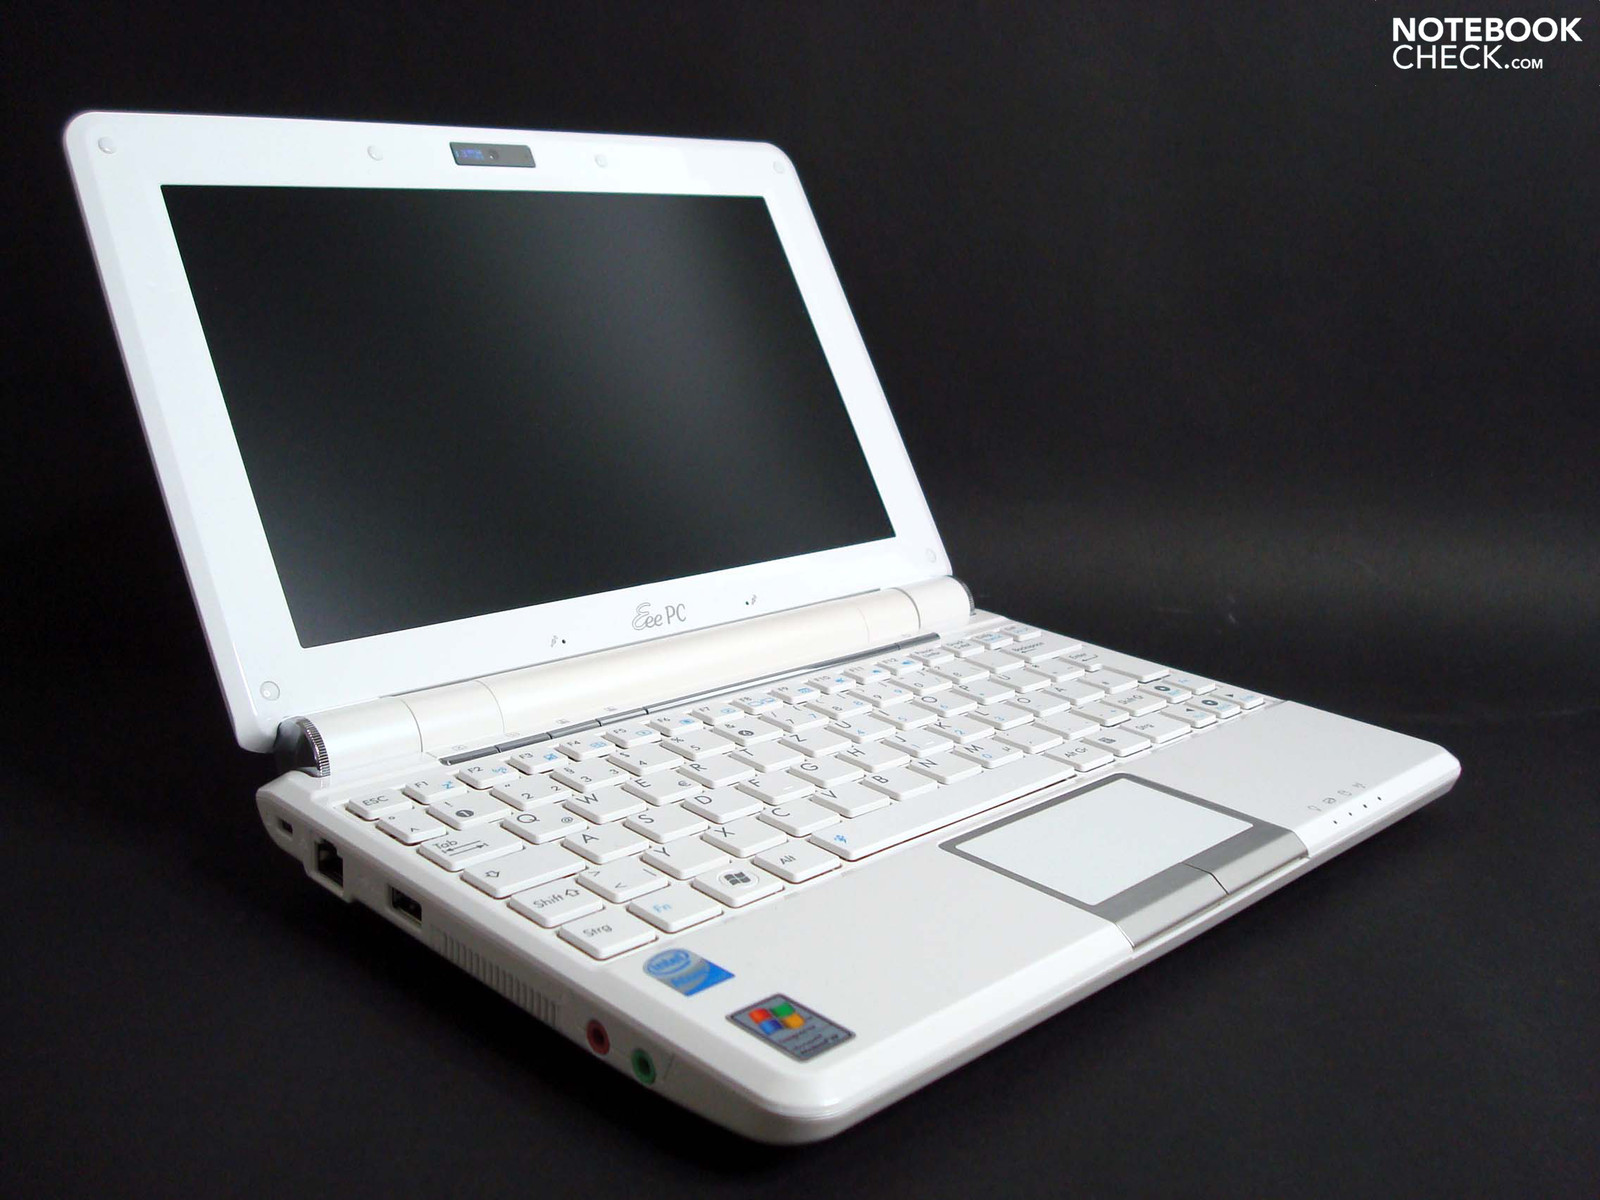 Noticias de última hora Mediador dinámica Análisis del mini portatil Asus Eee PC 1000HE - Notebookcheck.org